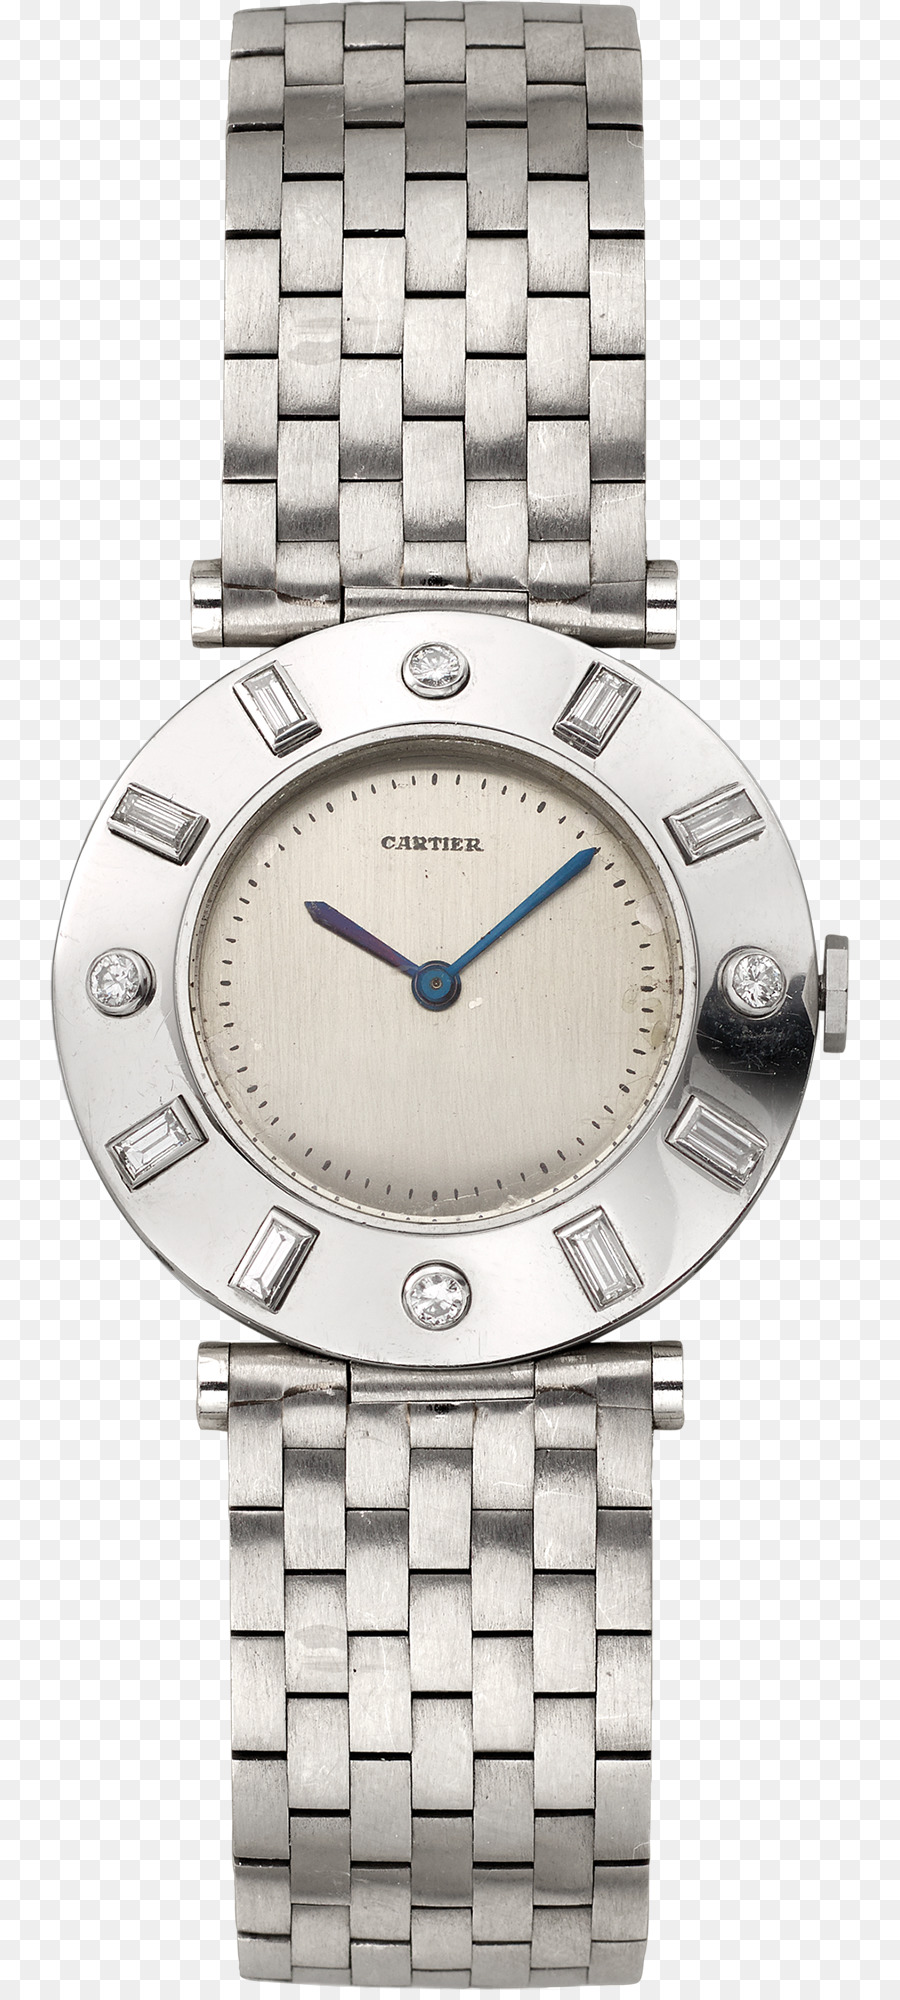 Uhr Tissot Raymond Weil Rolex Longines - Uhr